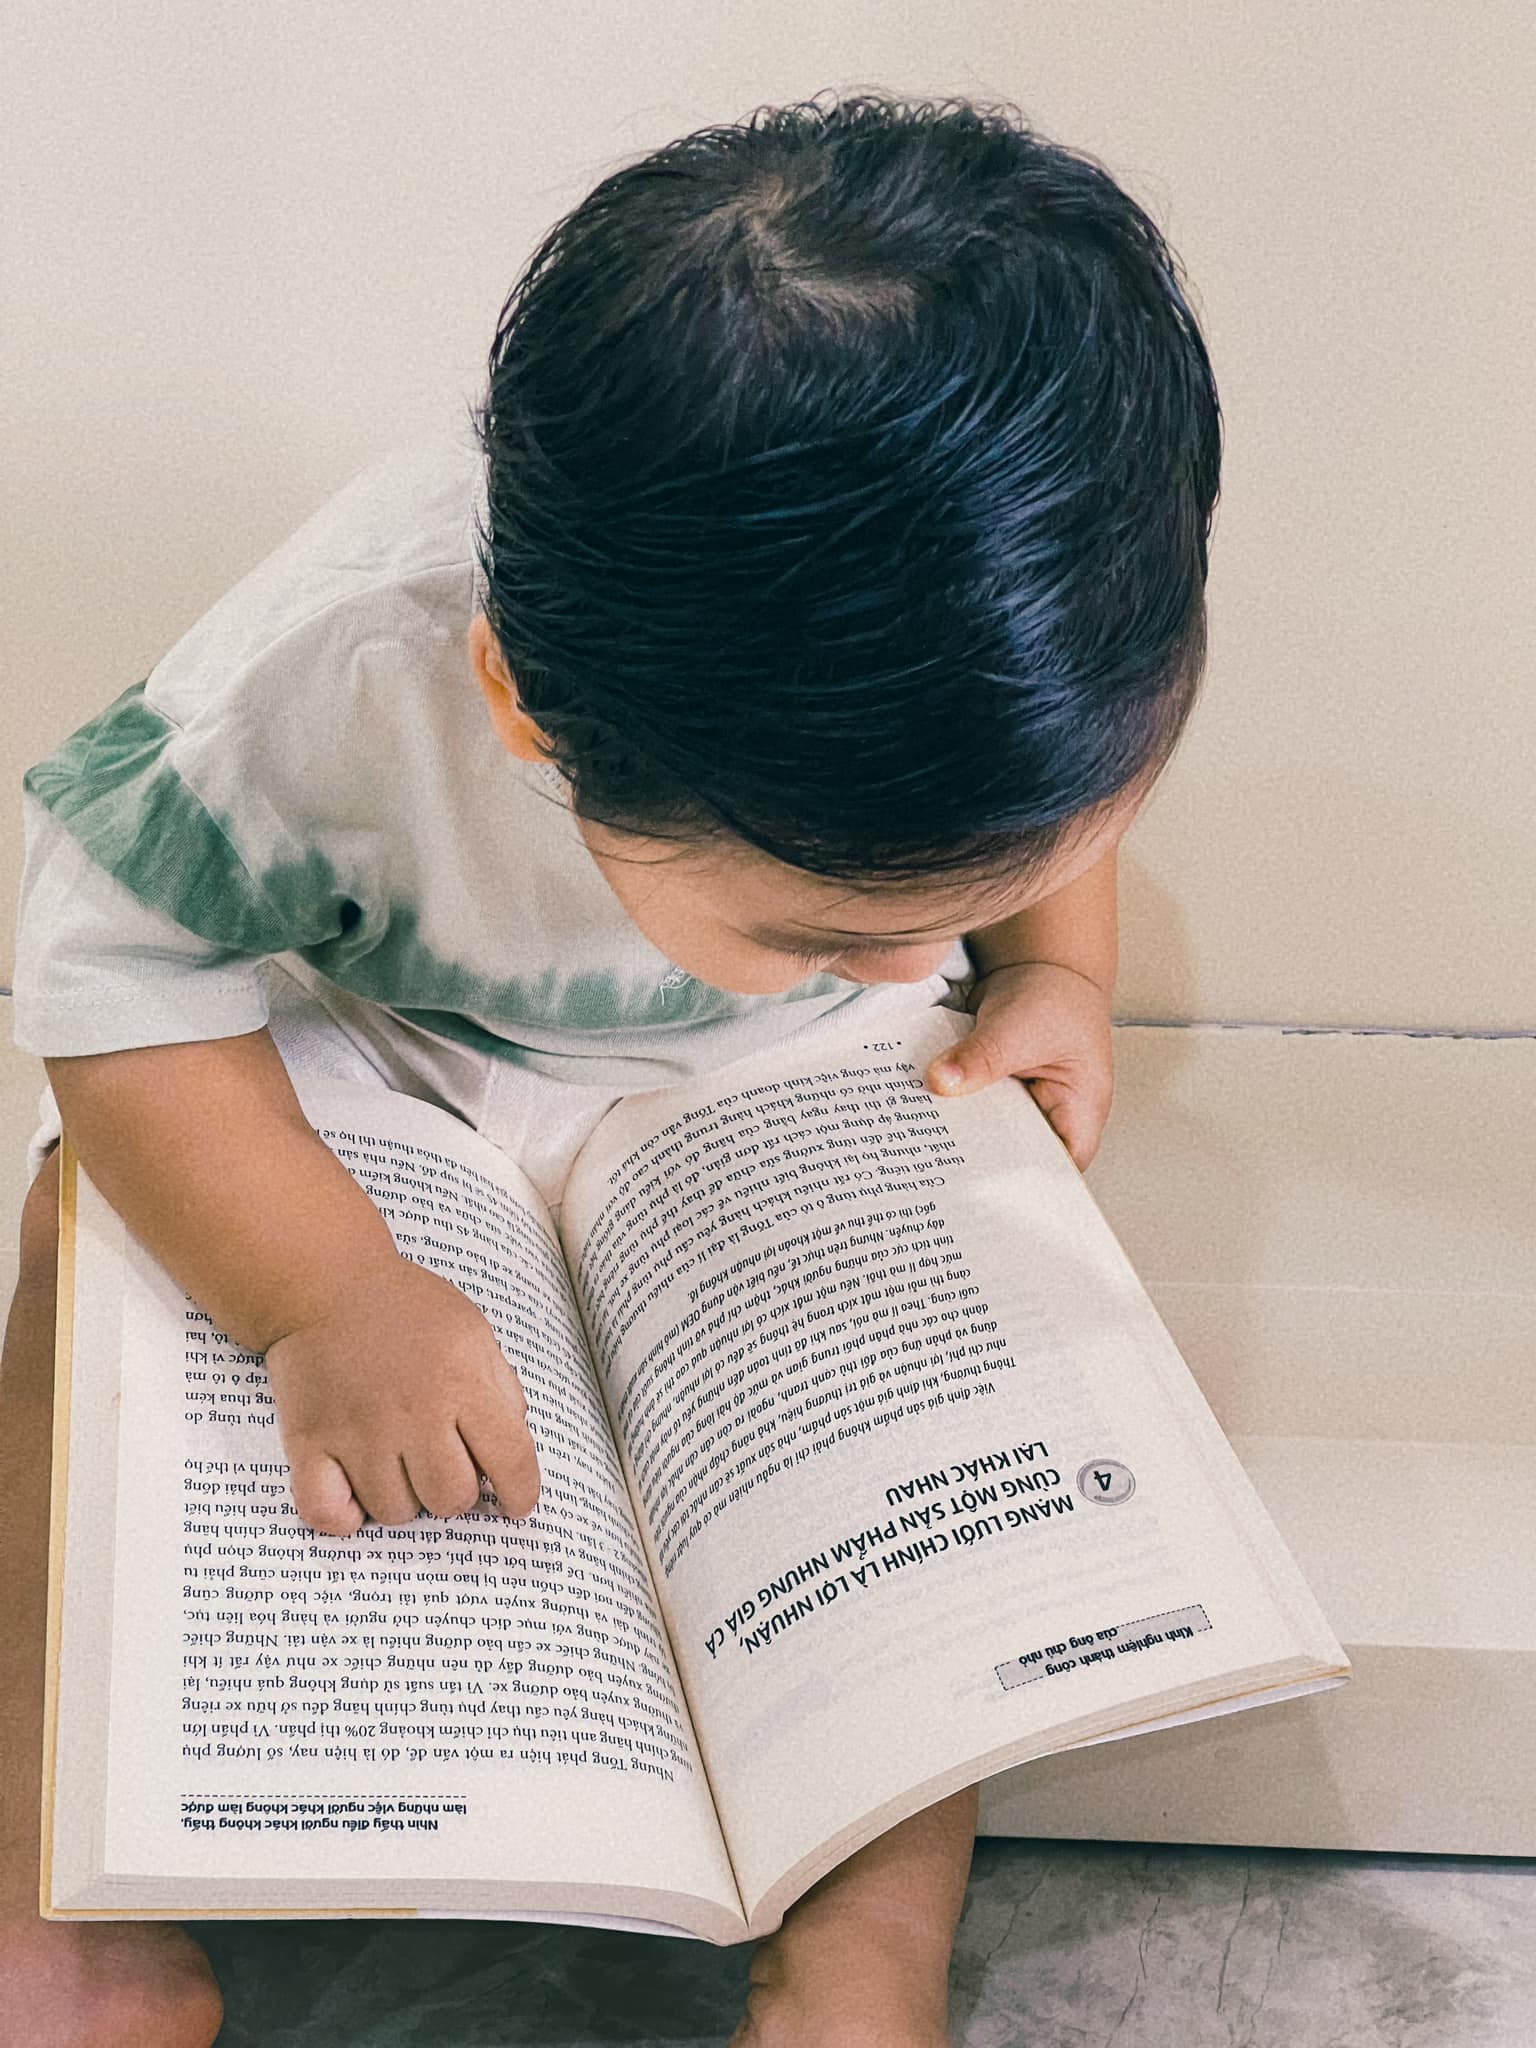 Mới hơn 1 tuổi con trai Hòa Minzy đã mê đọc sách, thái độ chăm chú đúng chuẩn dân tri thức